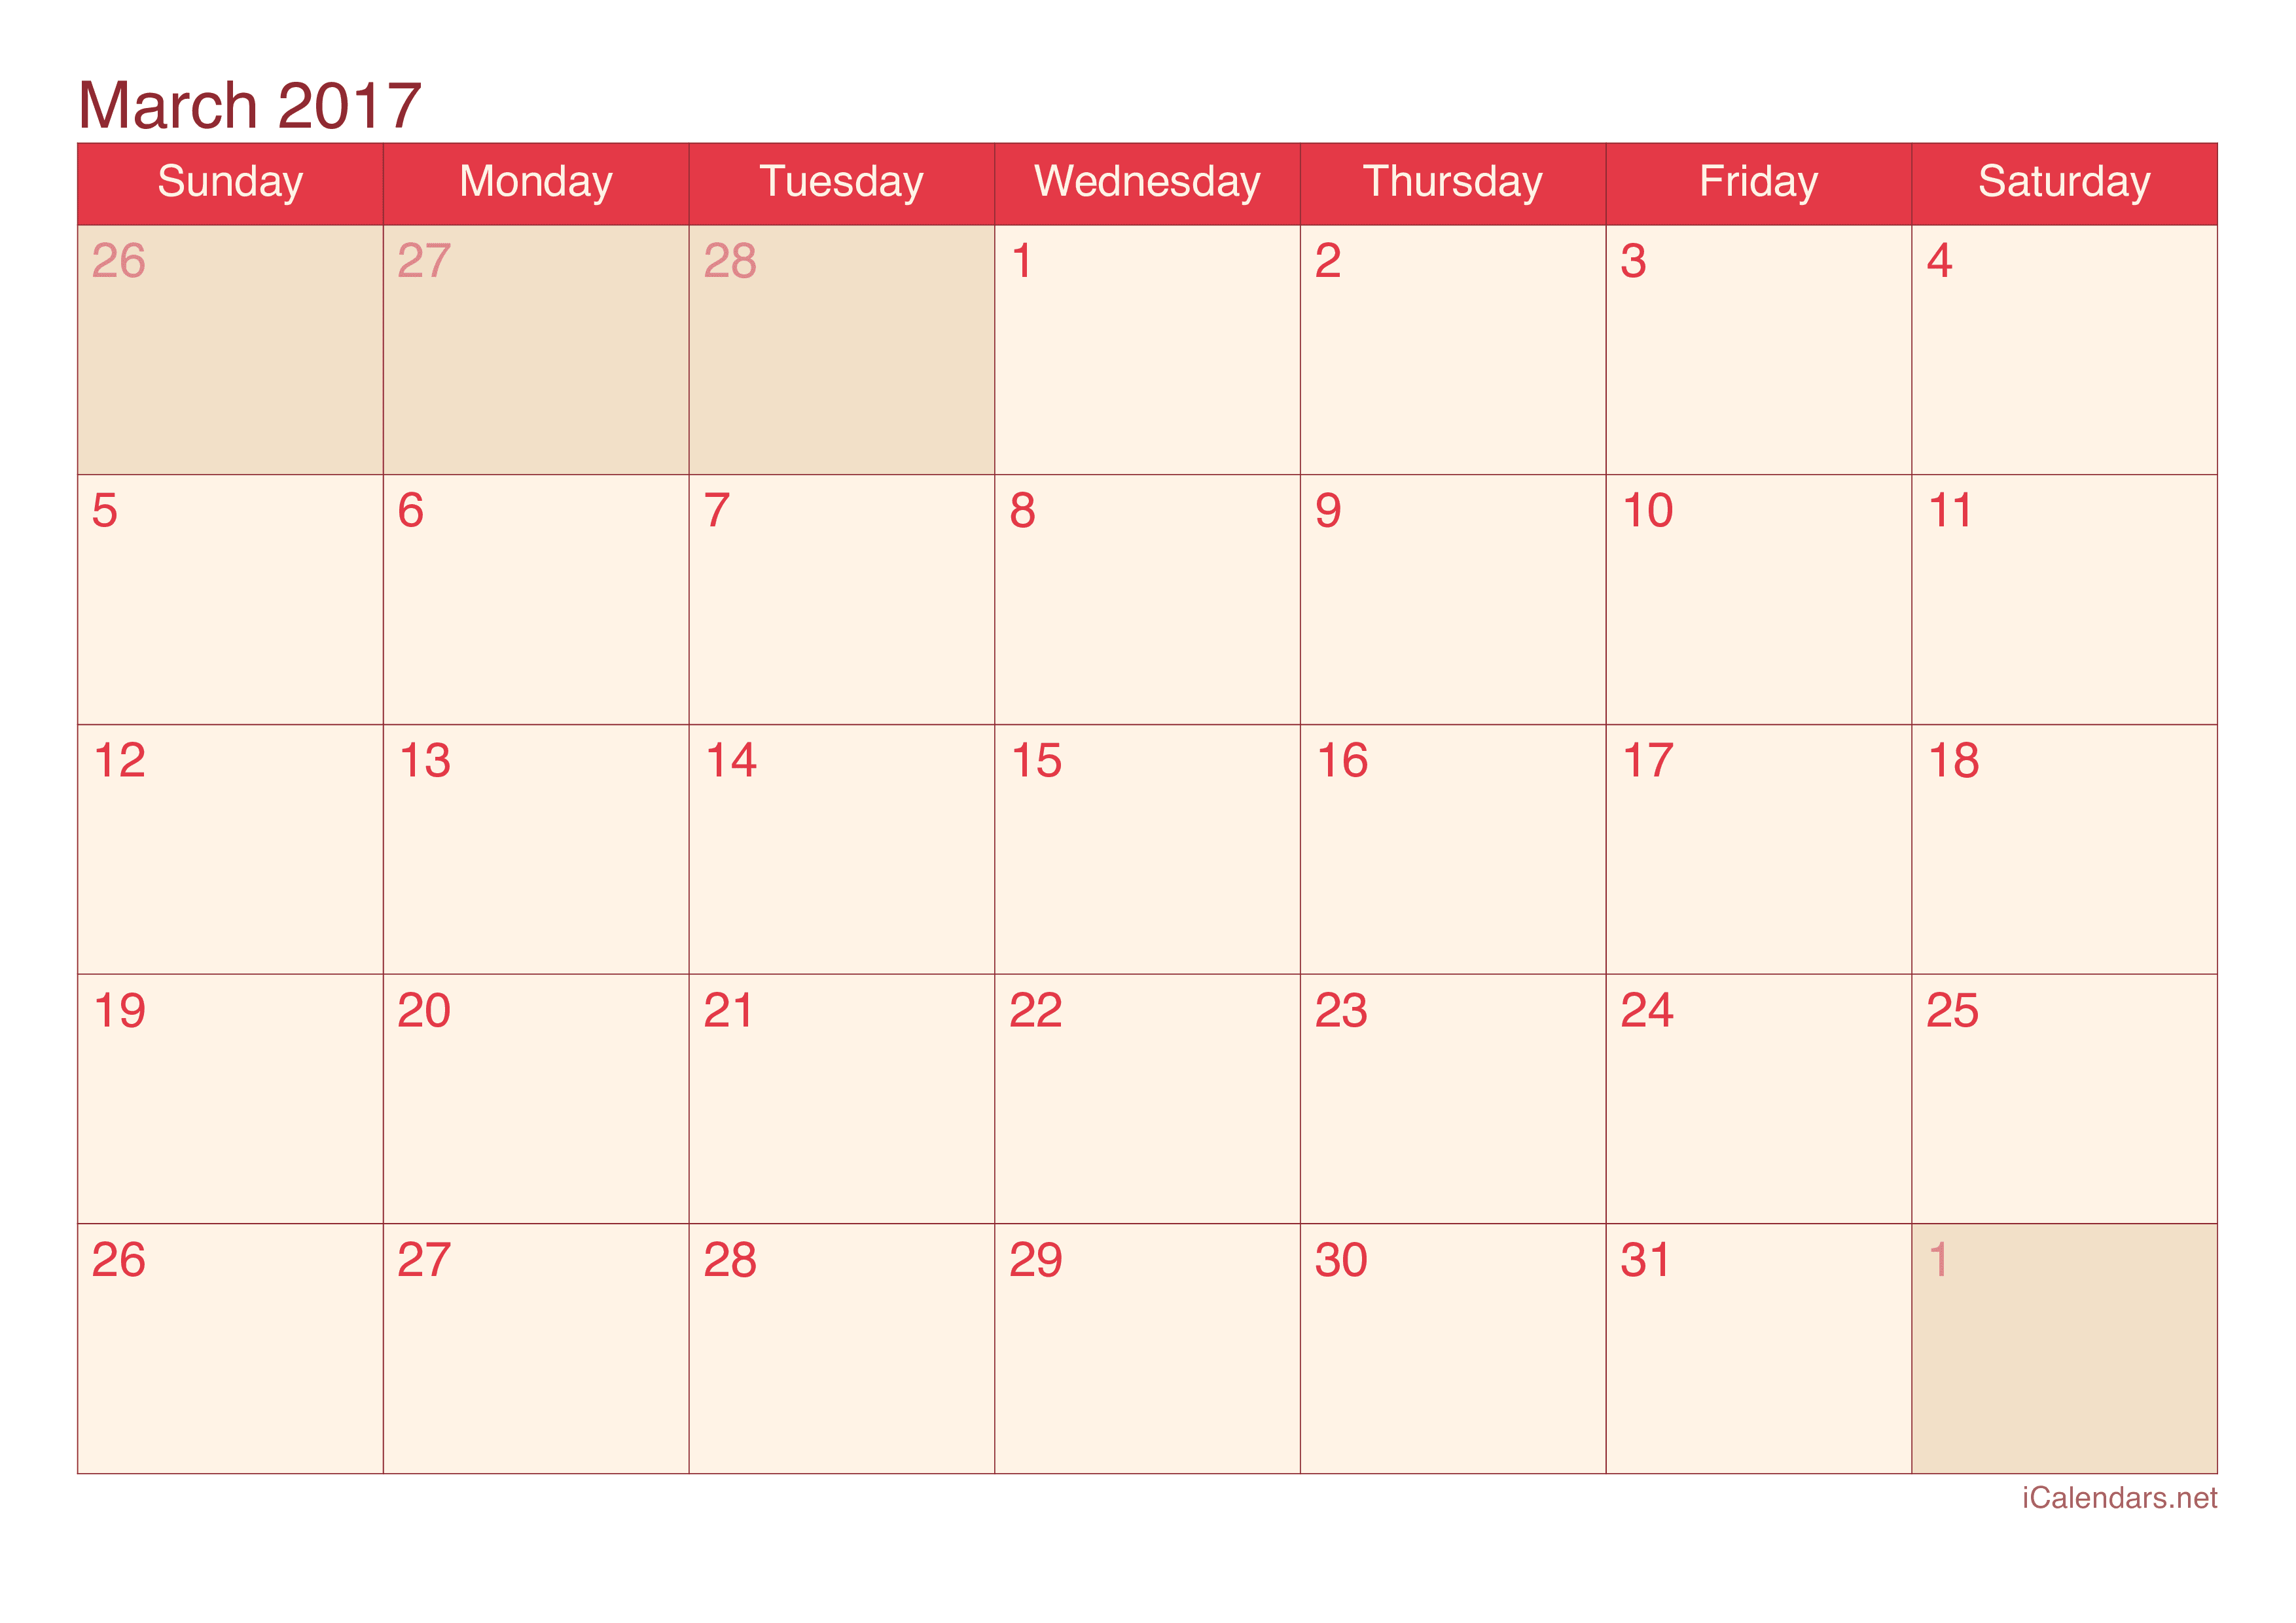 2017 March Calendar - Cherry